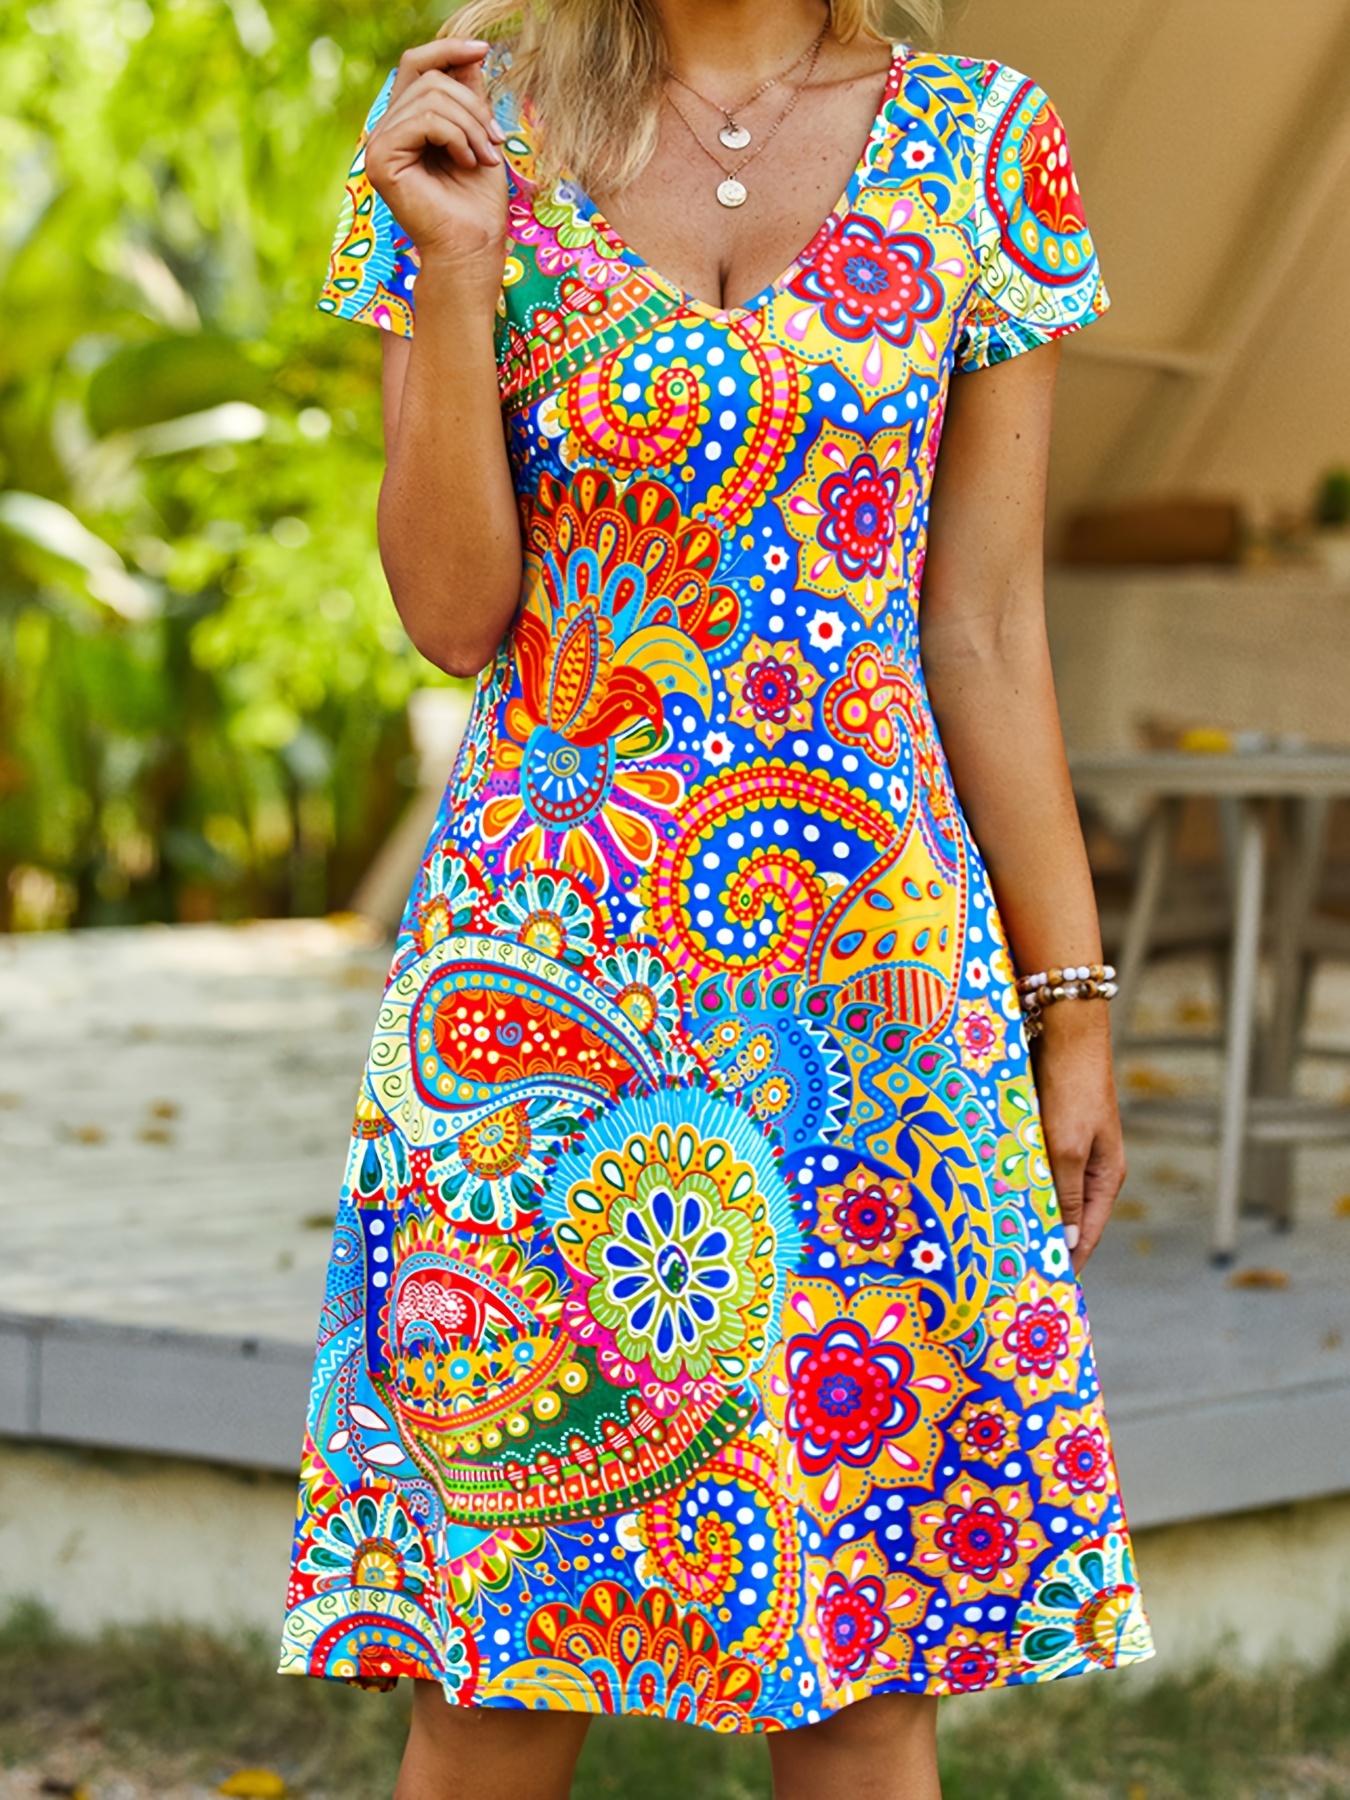 Cami Dress for Summer Tiered Sundress Boho Layered Tent Dress for Women  Teen Girl Sleeveless Short Babydoll Dress 